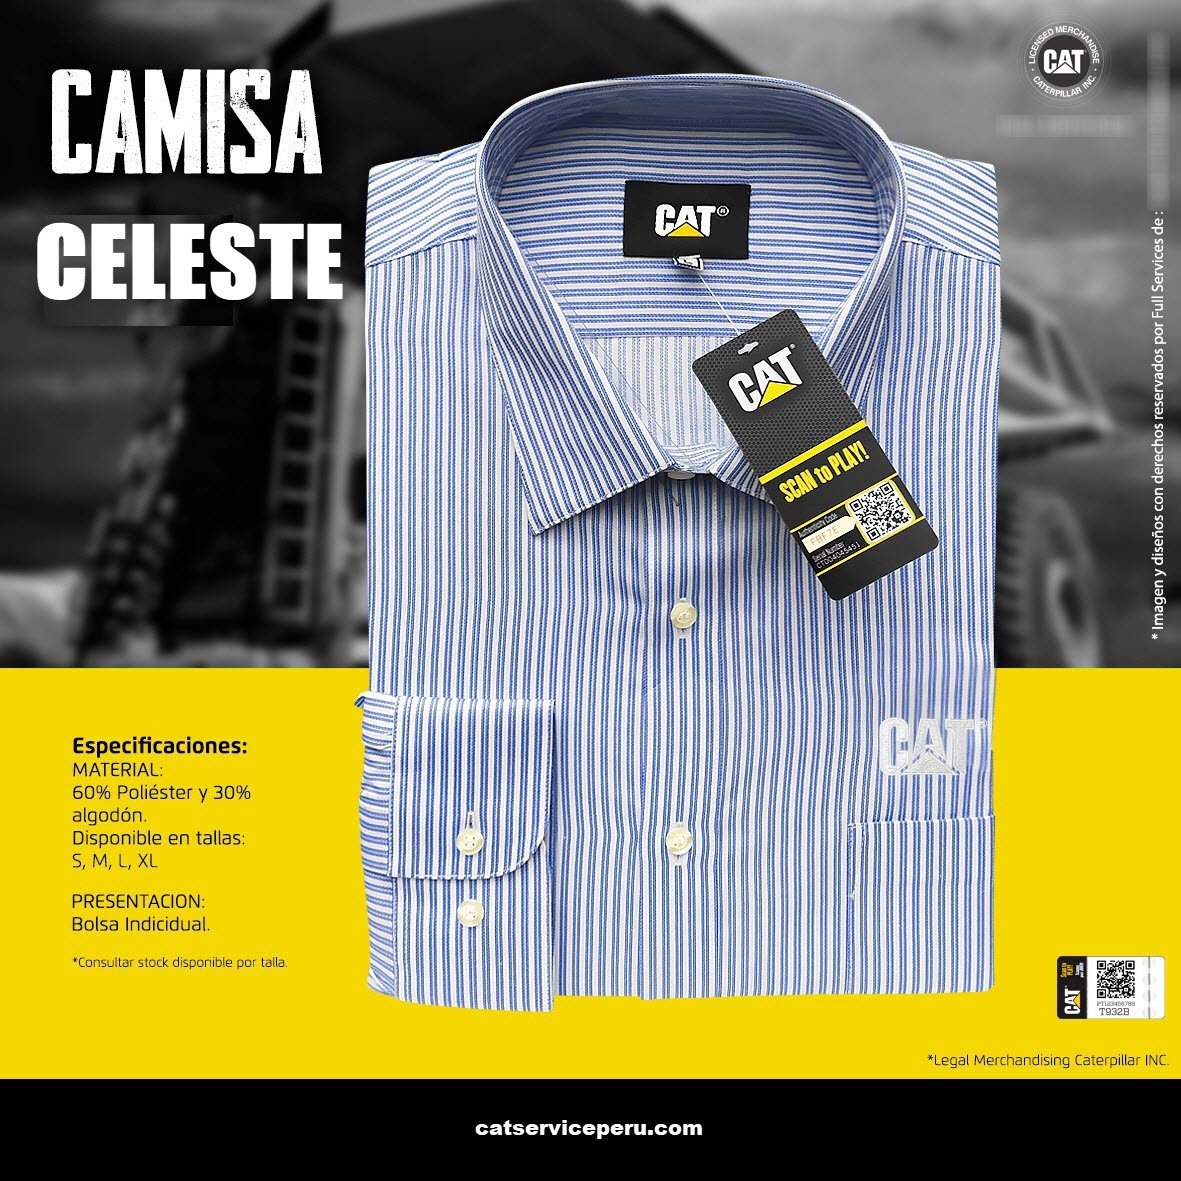 Camisa Celeste Manga Larga Caterpillar - CAT SERVICE PERU S.A.C.